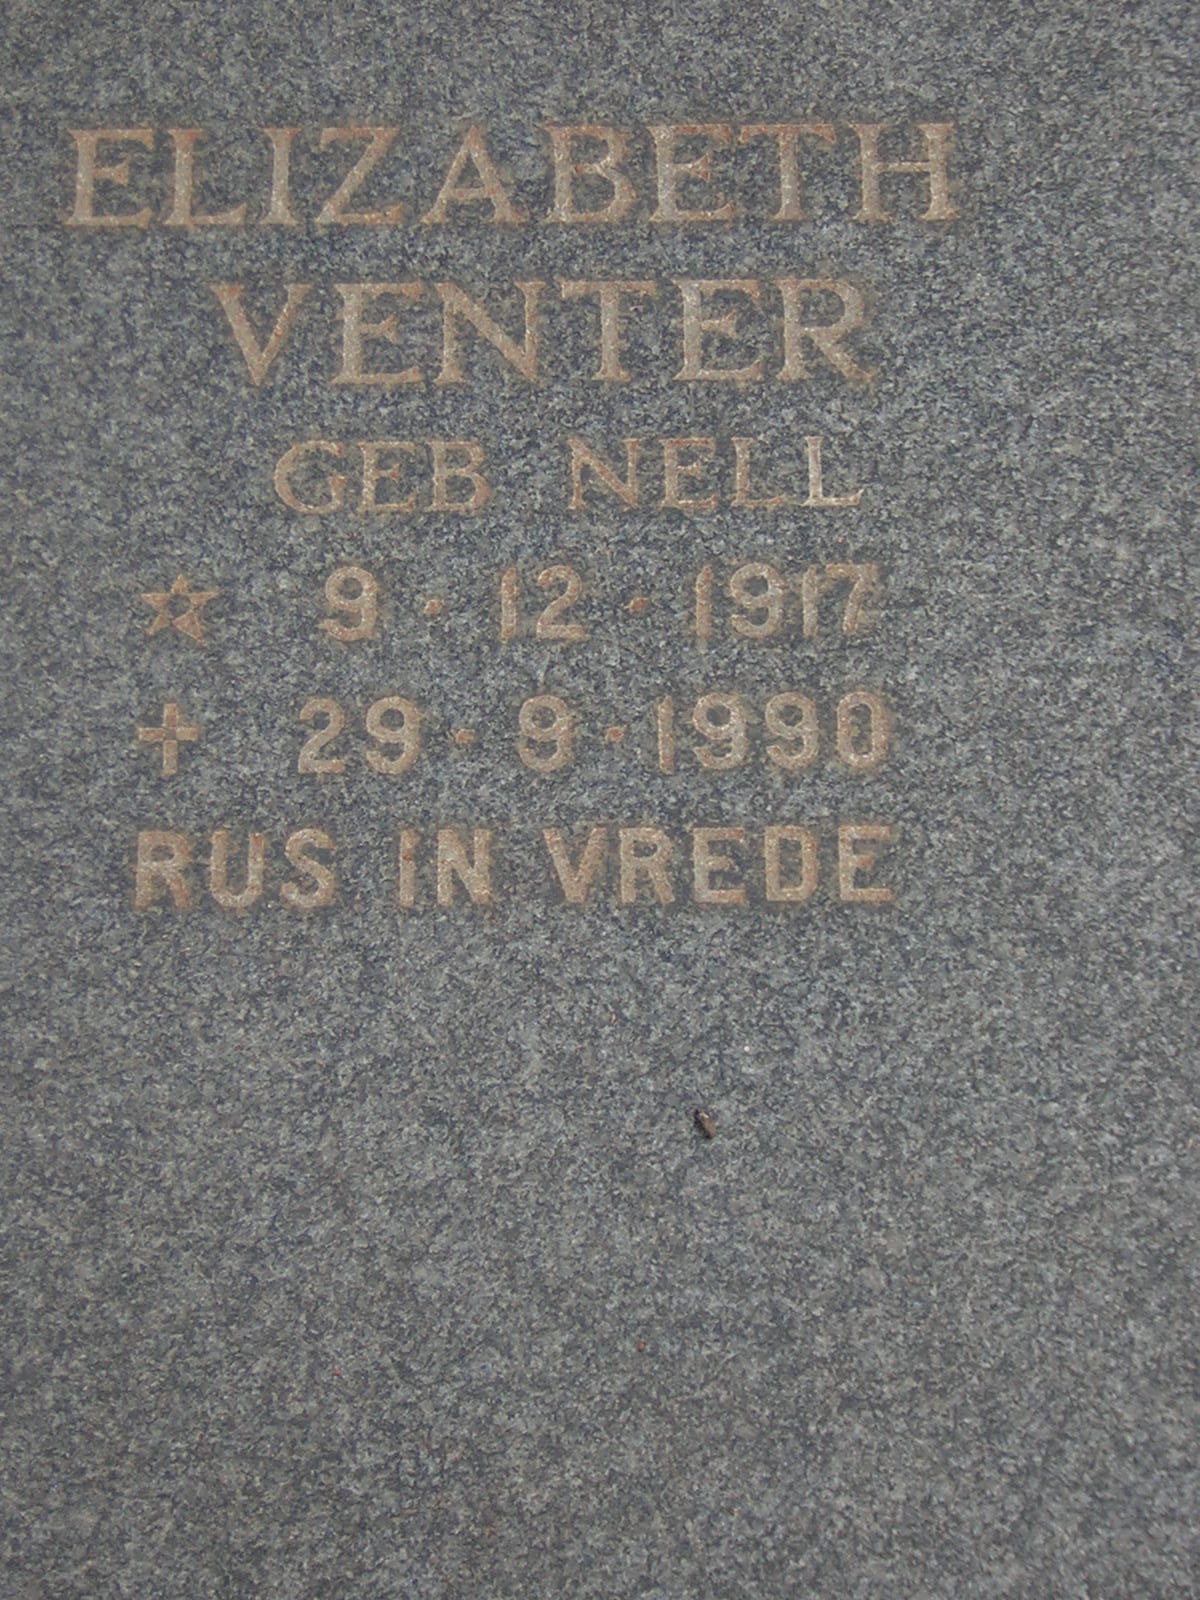 VENTER Elizabeth nee NELL 1917-1990